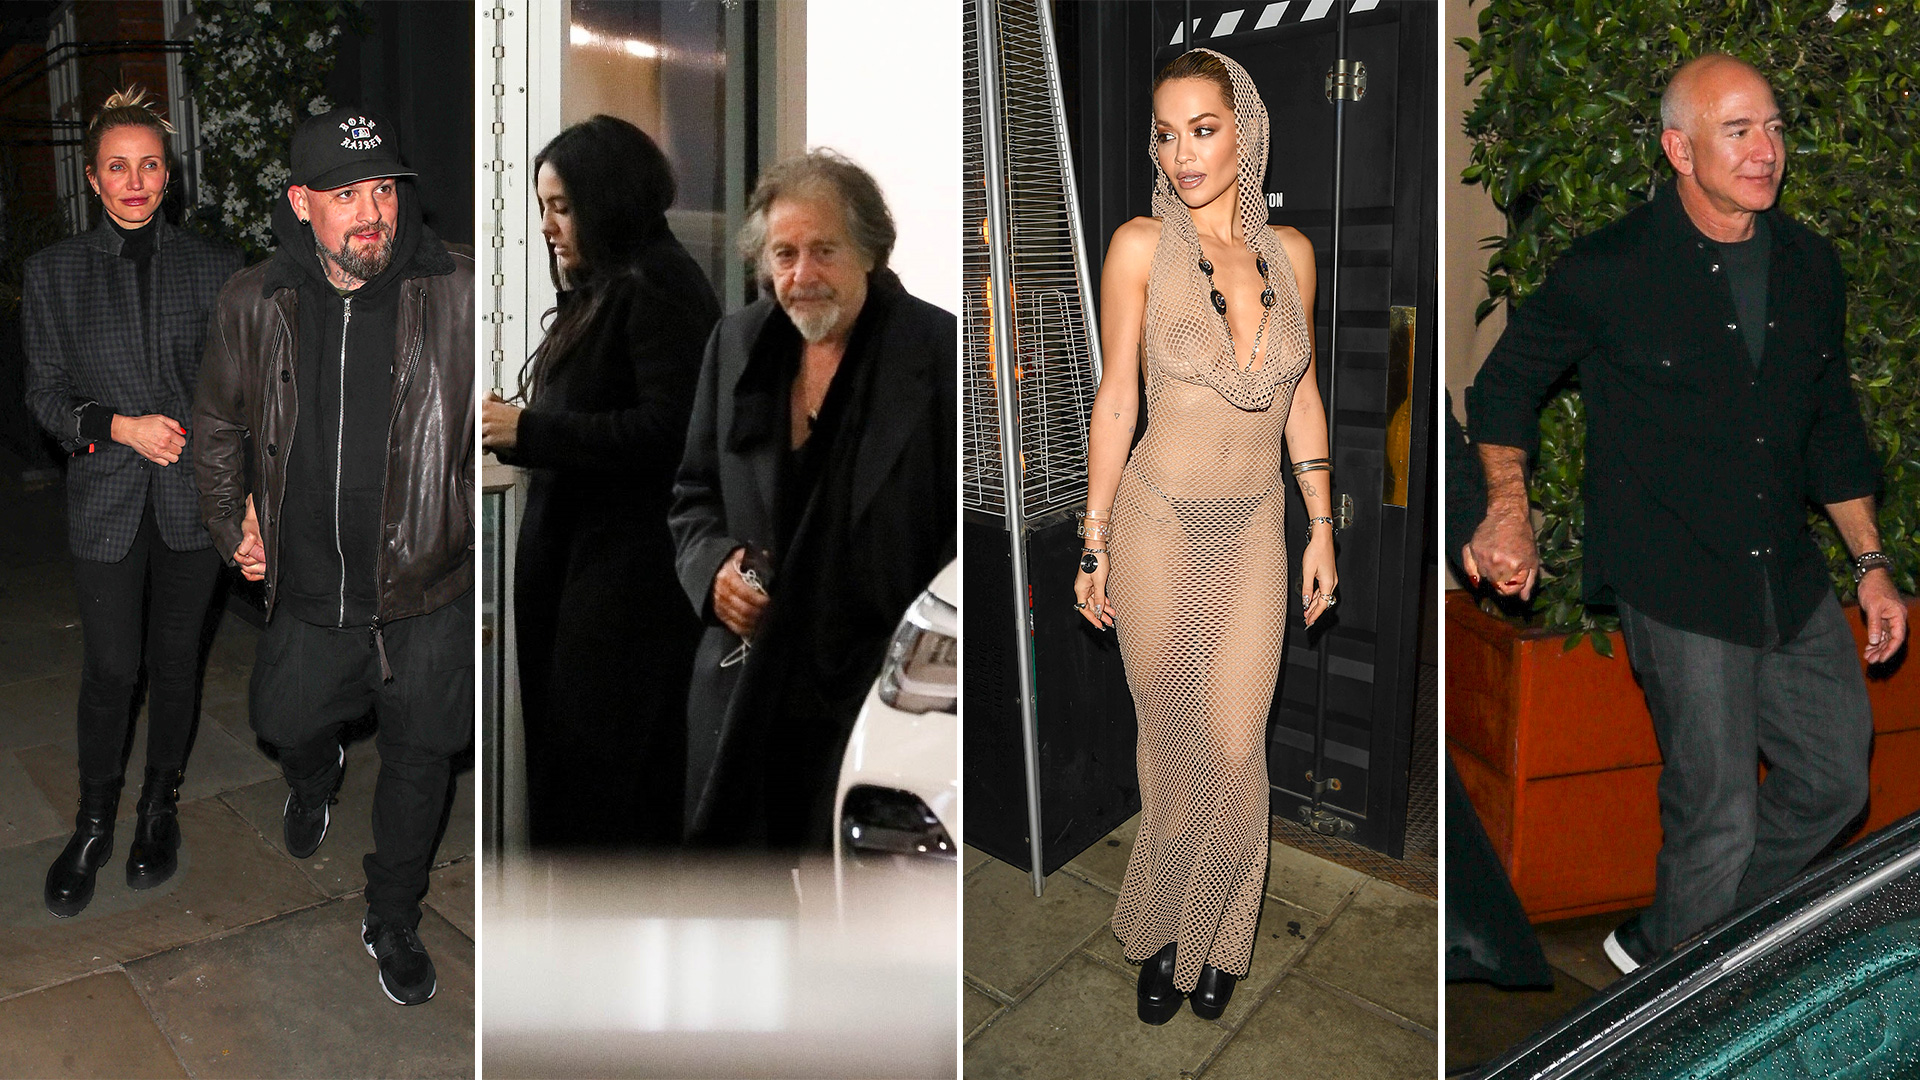 Del deslumbrante vestido de Rita Ora a la salida de Cameron Diaz: celebrities en un click